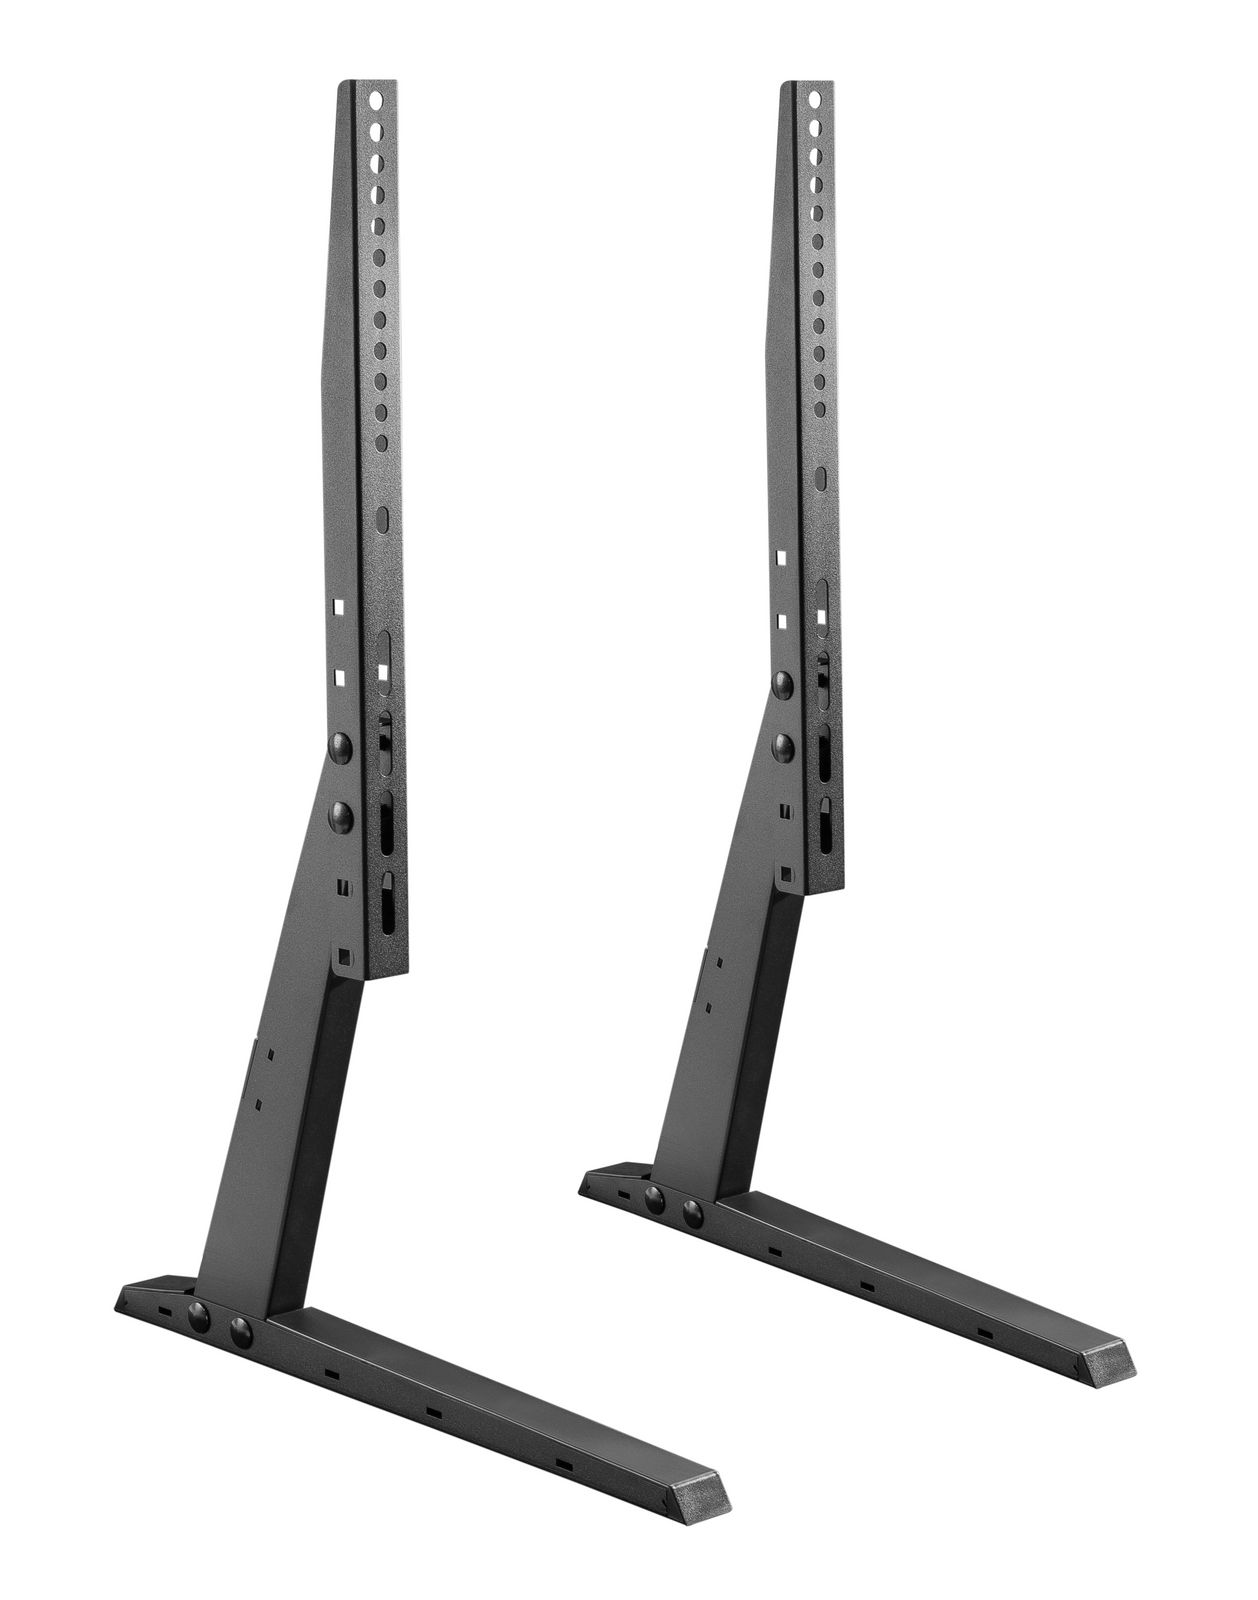 Universal Standfuß für Flachbildschirme MyWall HP36 für Bildschirme 37“ - 70" (94 - 178 cm),Belastung bis 35 kg 2 Stück schwarz